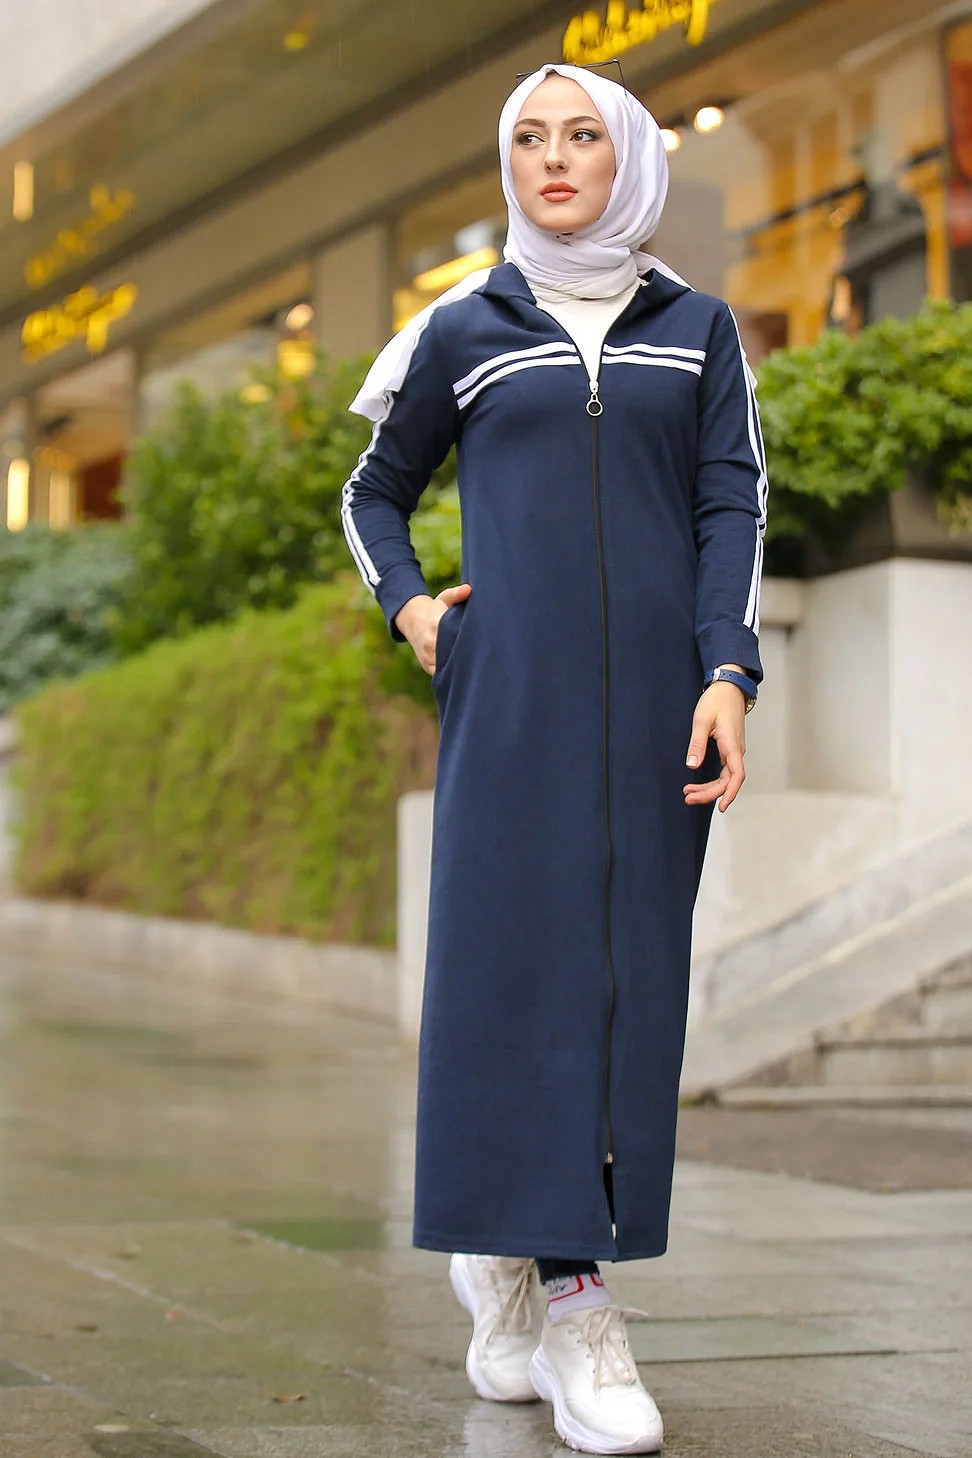 Veste longue zippée style sportswear (Robe Sport pour femme voilée) -  Couleur bleu marine - Prêt à porter et accessoires sur